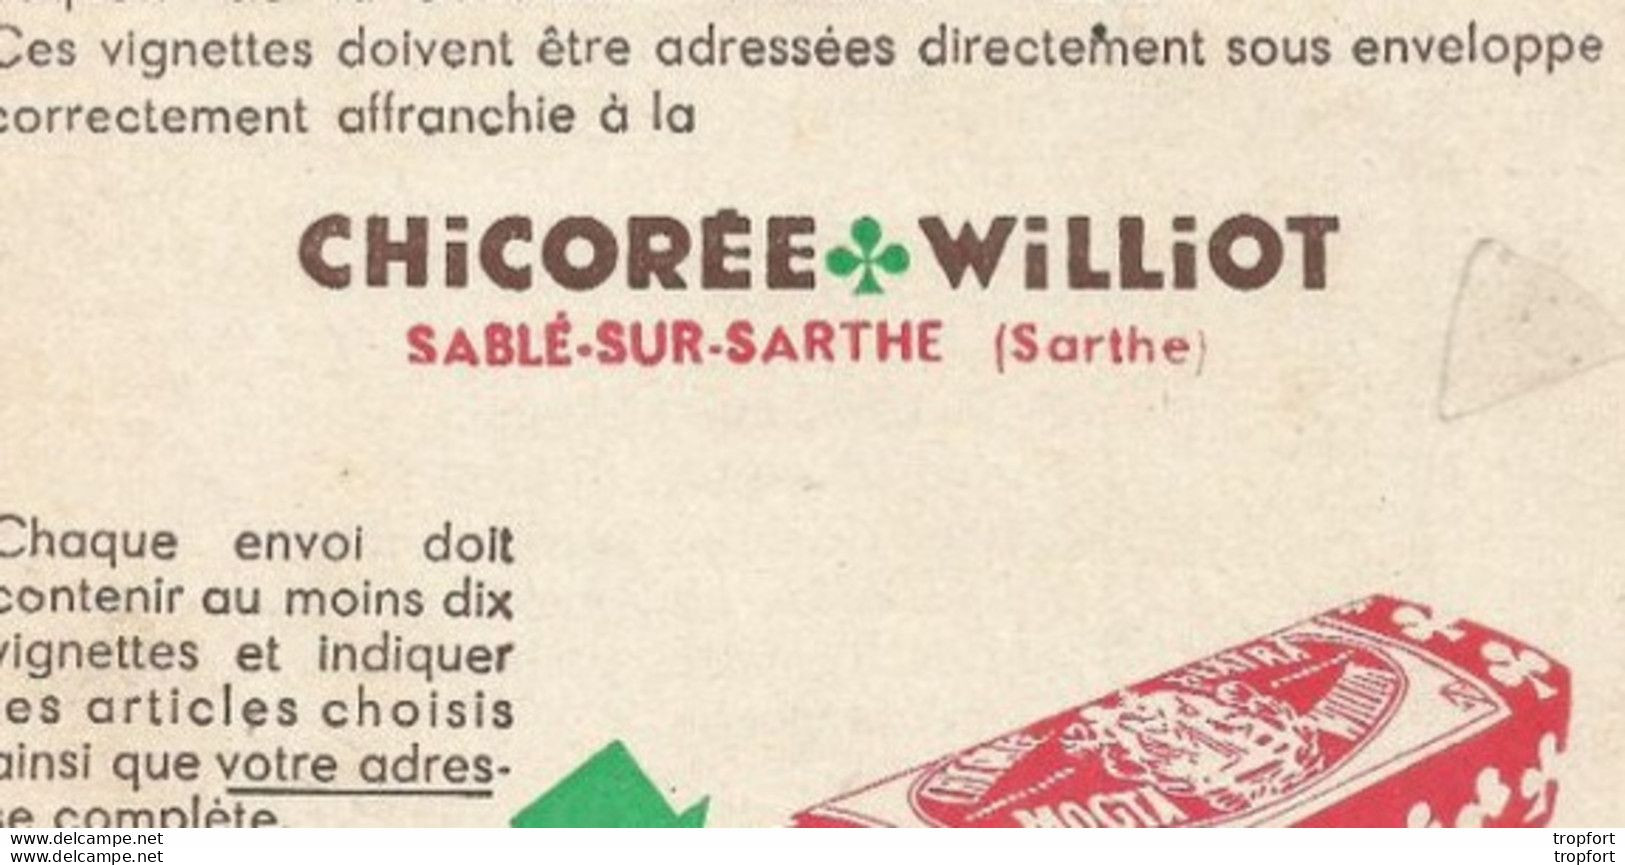 Vintage / Rare Publicité Affichette Publicitaire Sable Sur SARTHE Chicorée WILLIOT - Publicidad